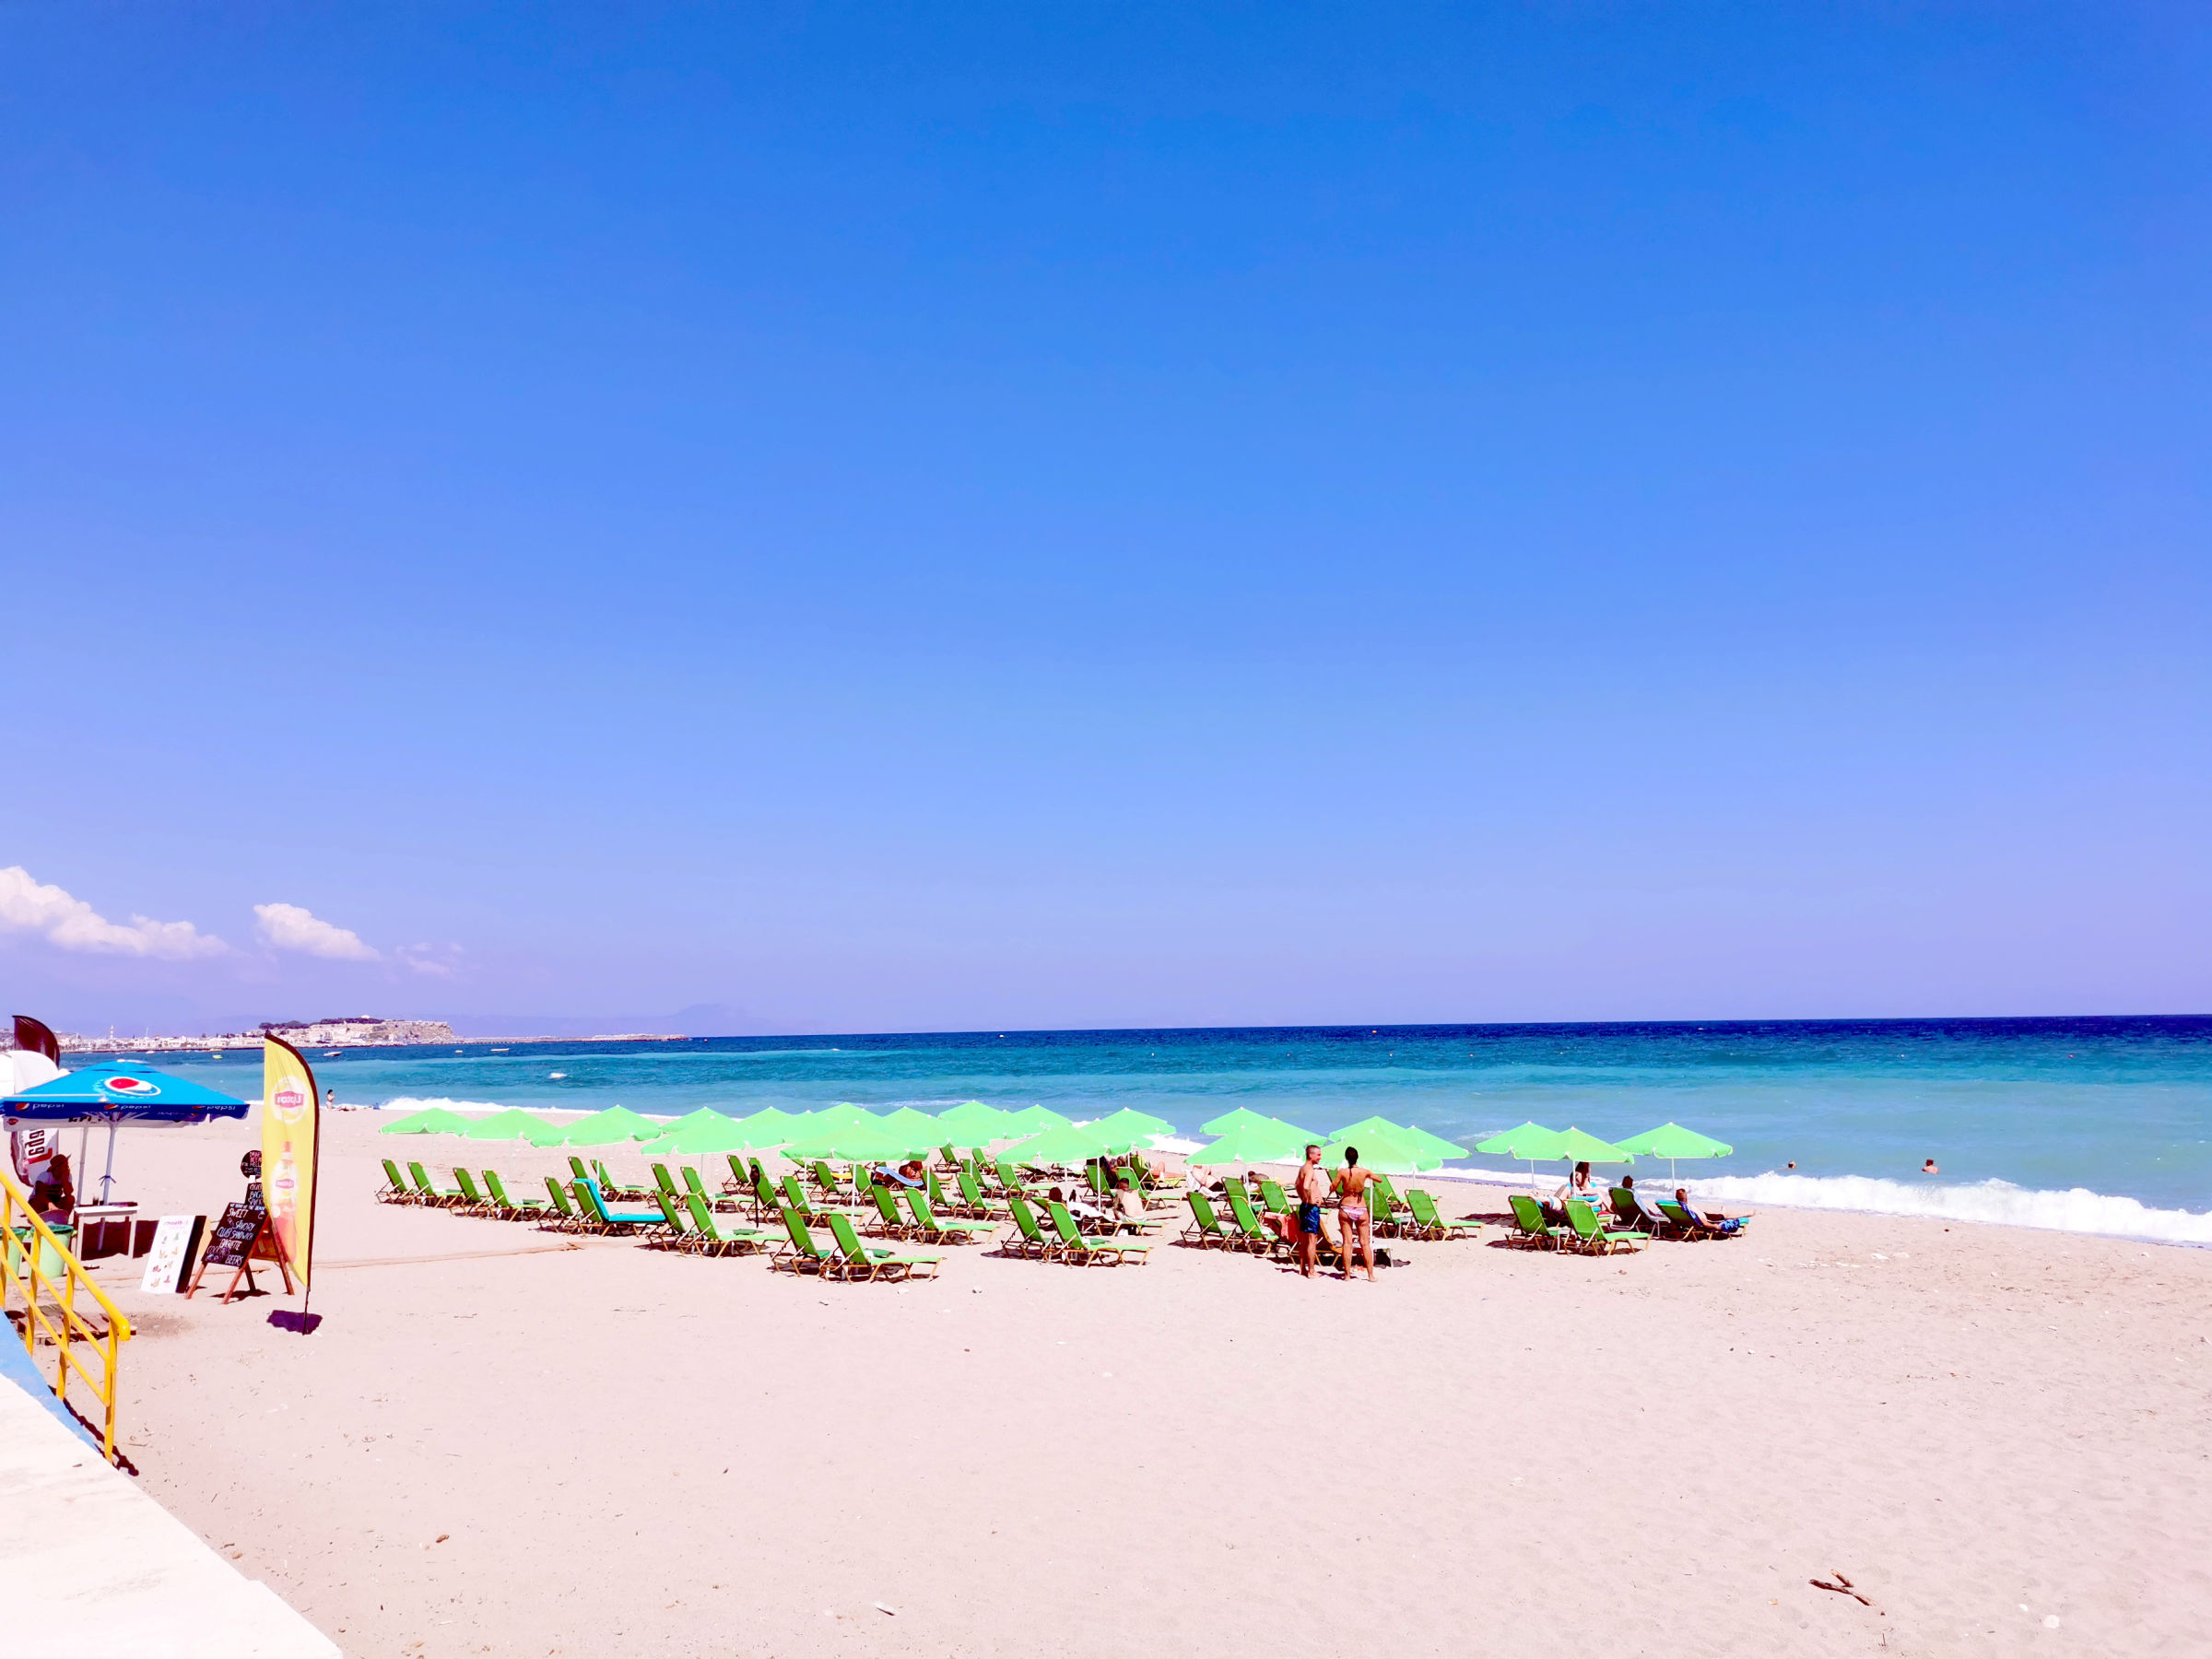 Bilde av en strand på Kreta